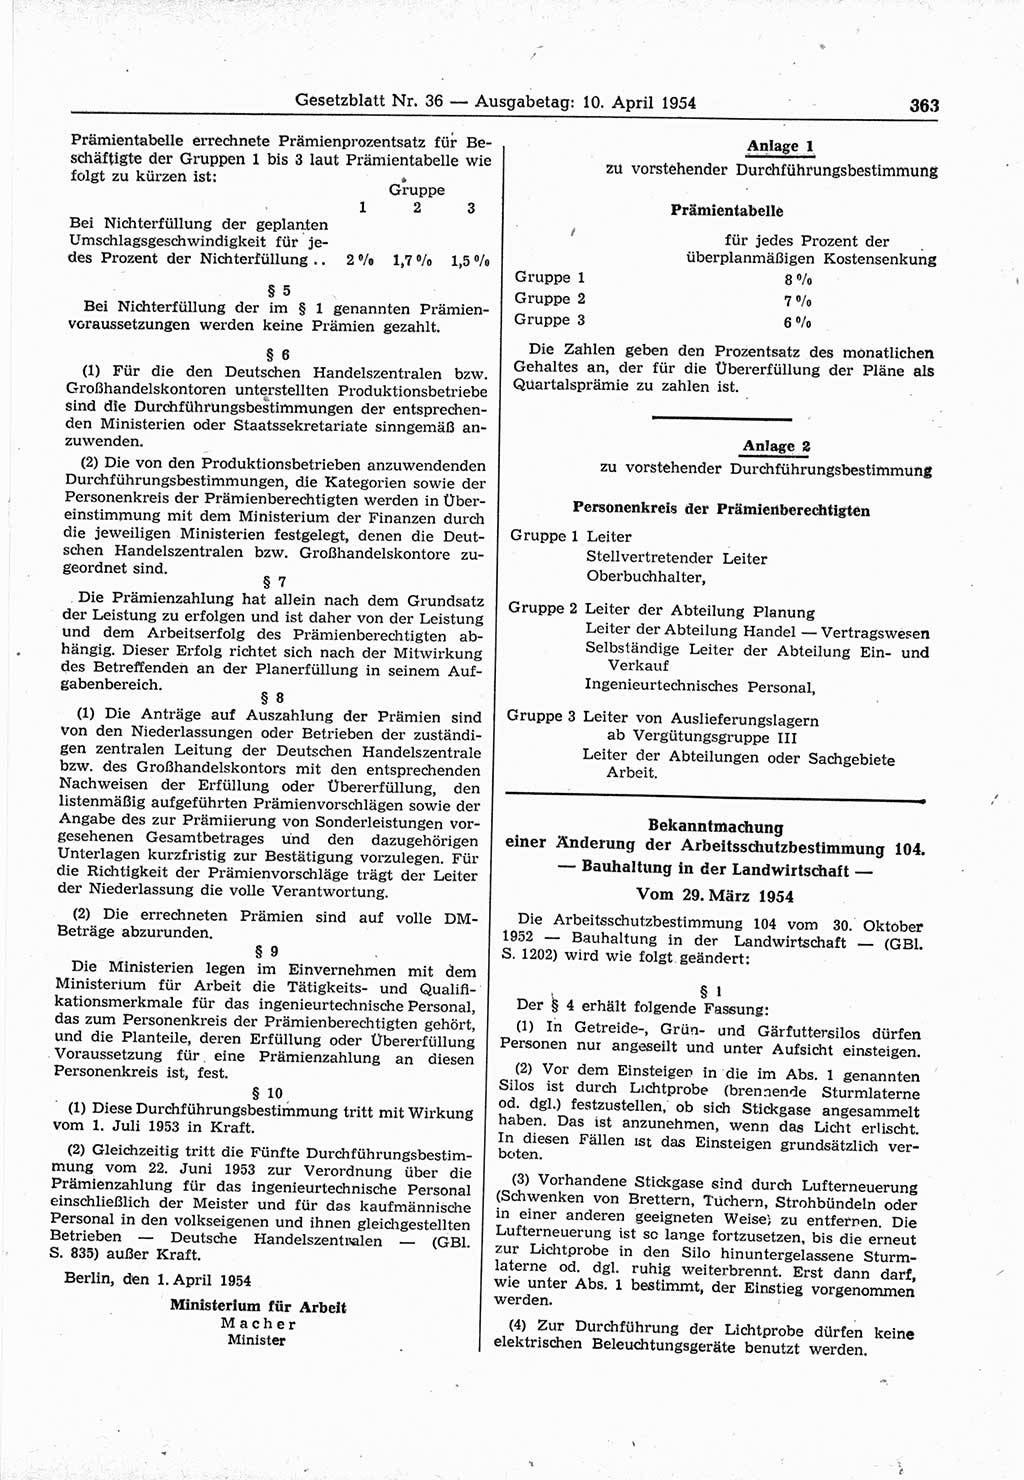 Gesetzblatt (GBl.) der Deutschen Demokratischen Republik (DDR) 1954, Seite 363 (GBl. DDR 1954, S. 363)